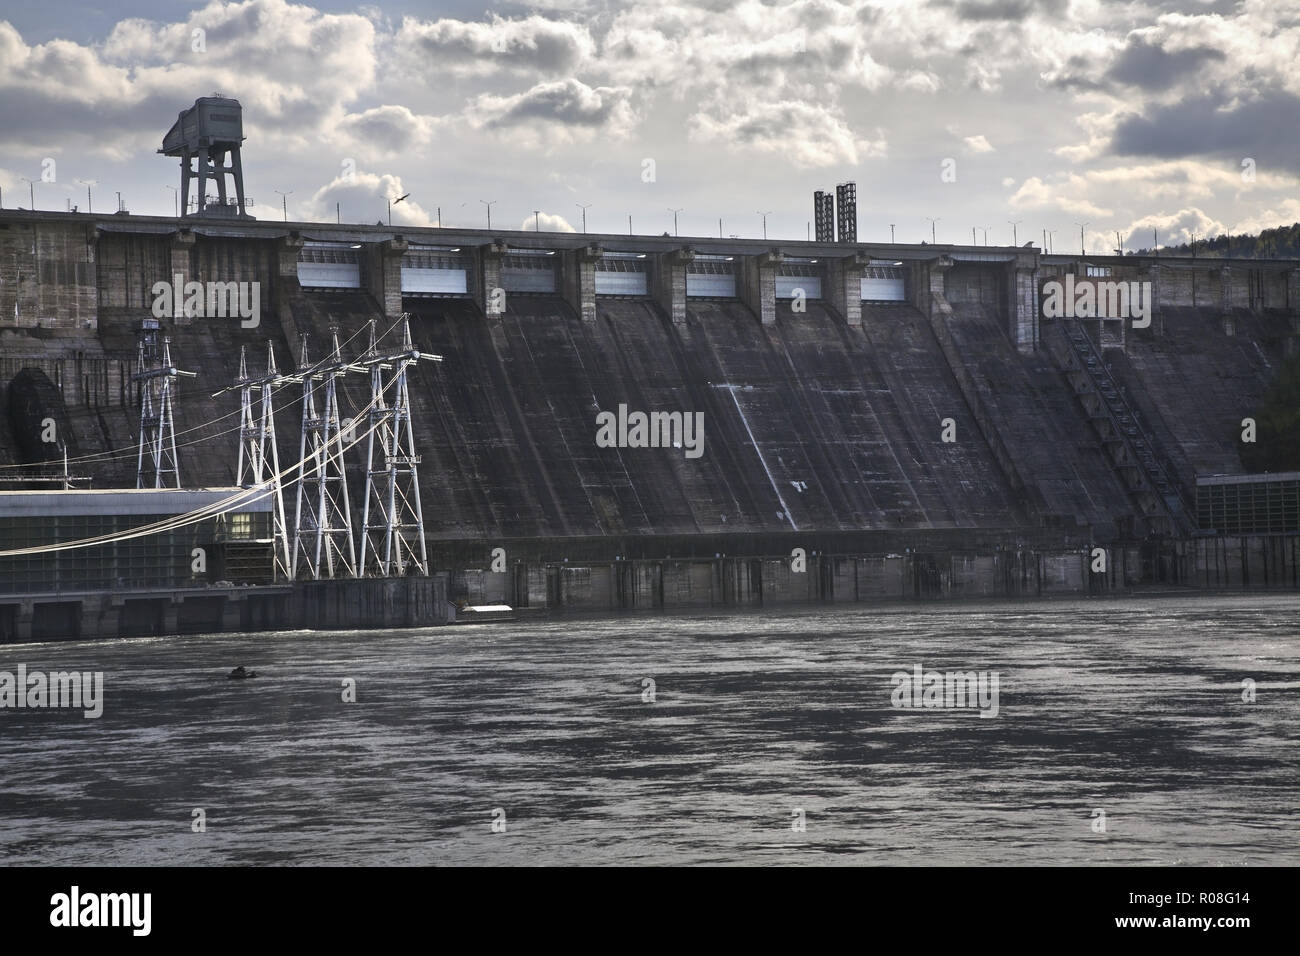 Dam in Divnogorsk. Krasnoyarsk krai. Russia Stock Photo